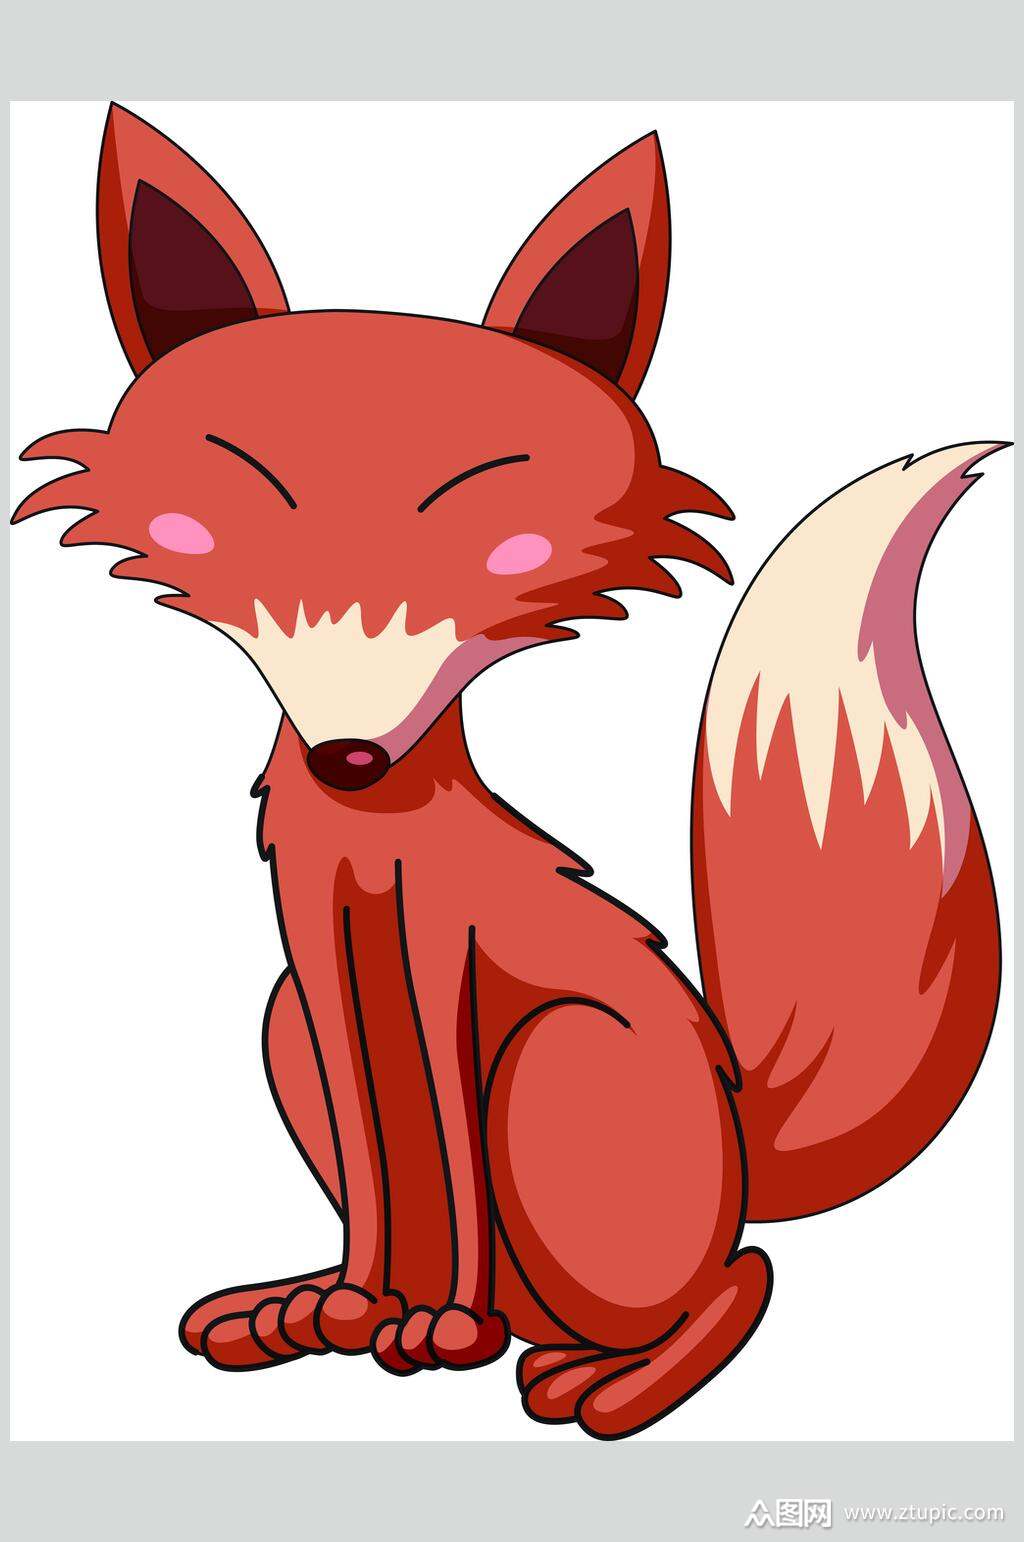 火狐狸(《神奇宝贝》系列中的一种虚拟生物)_搜狗百科